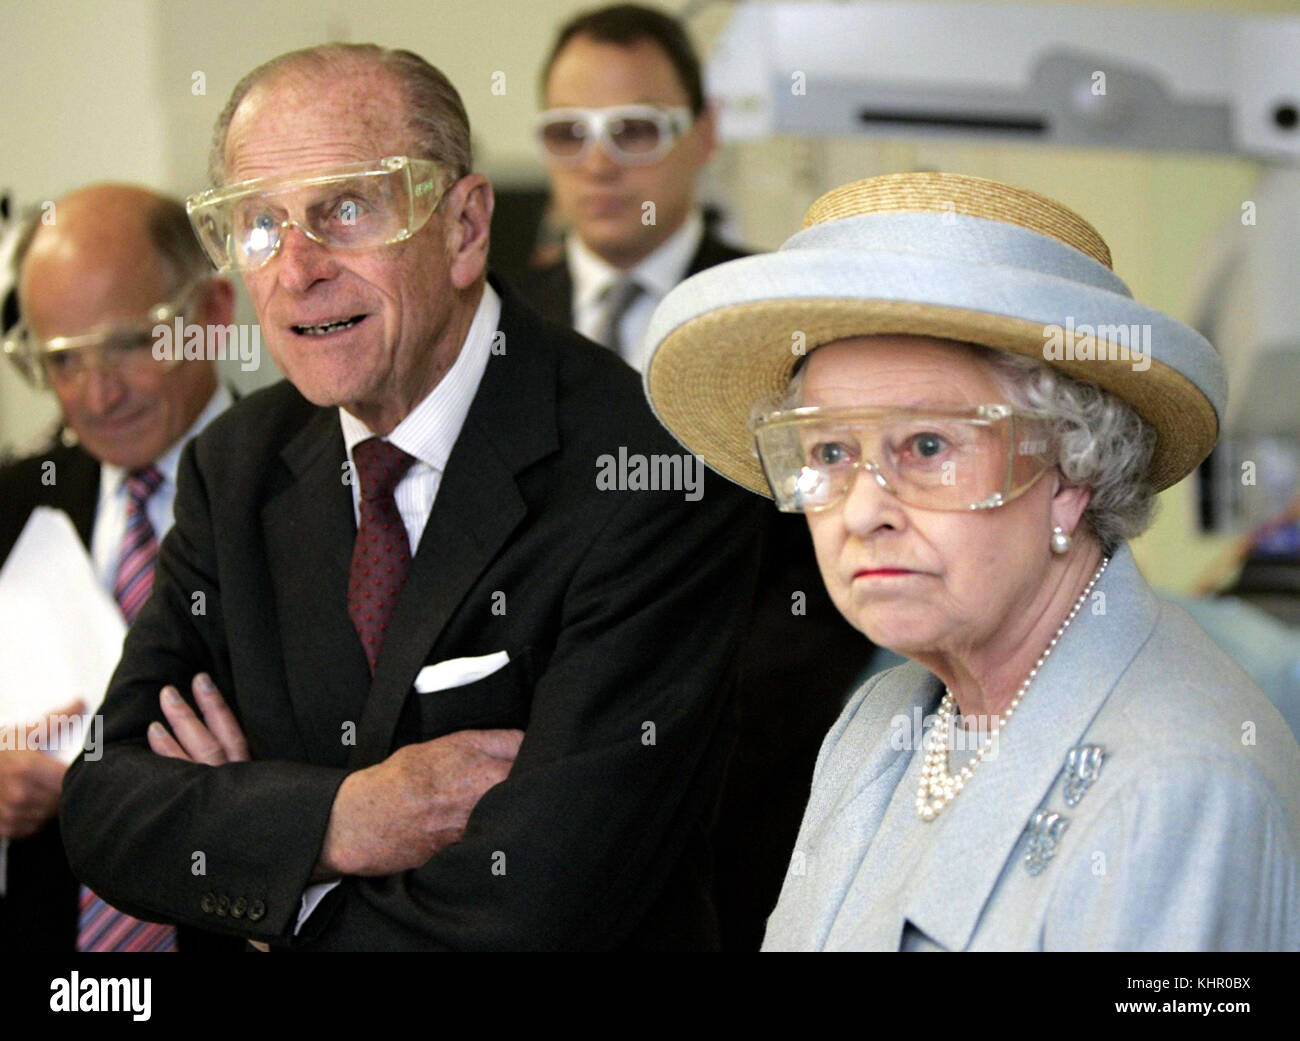 File foto datata 20/10/05 della regina Elisabetta II e il Duca di Edimburgo che indossa gli occhiali di protezione durante una chirurgia laser dimostrazione presso la University College Hospital di Londra. La coppia reale celebreranno il loro platinum anniversario di matrimonio il 20 novembre. Foto Stock